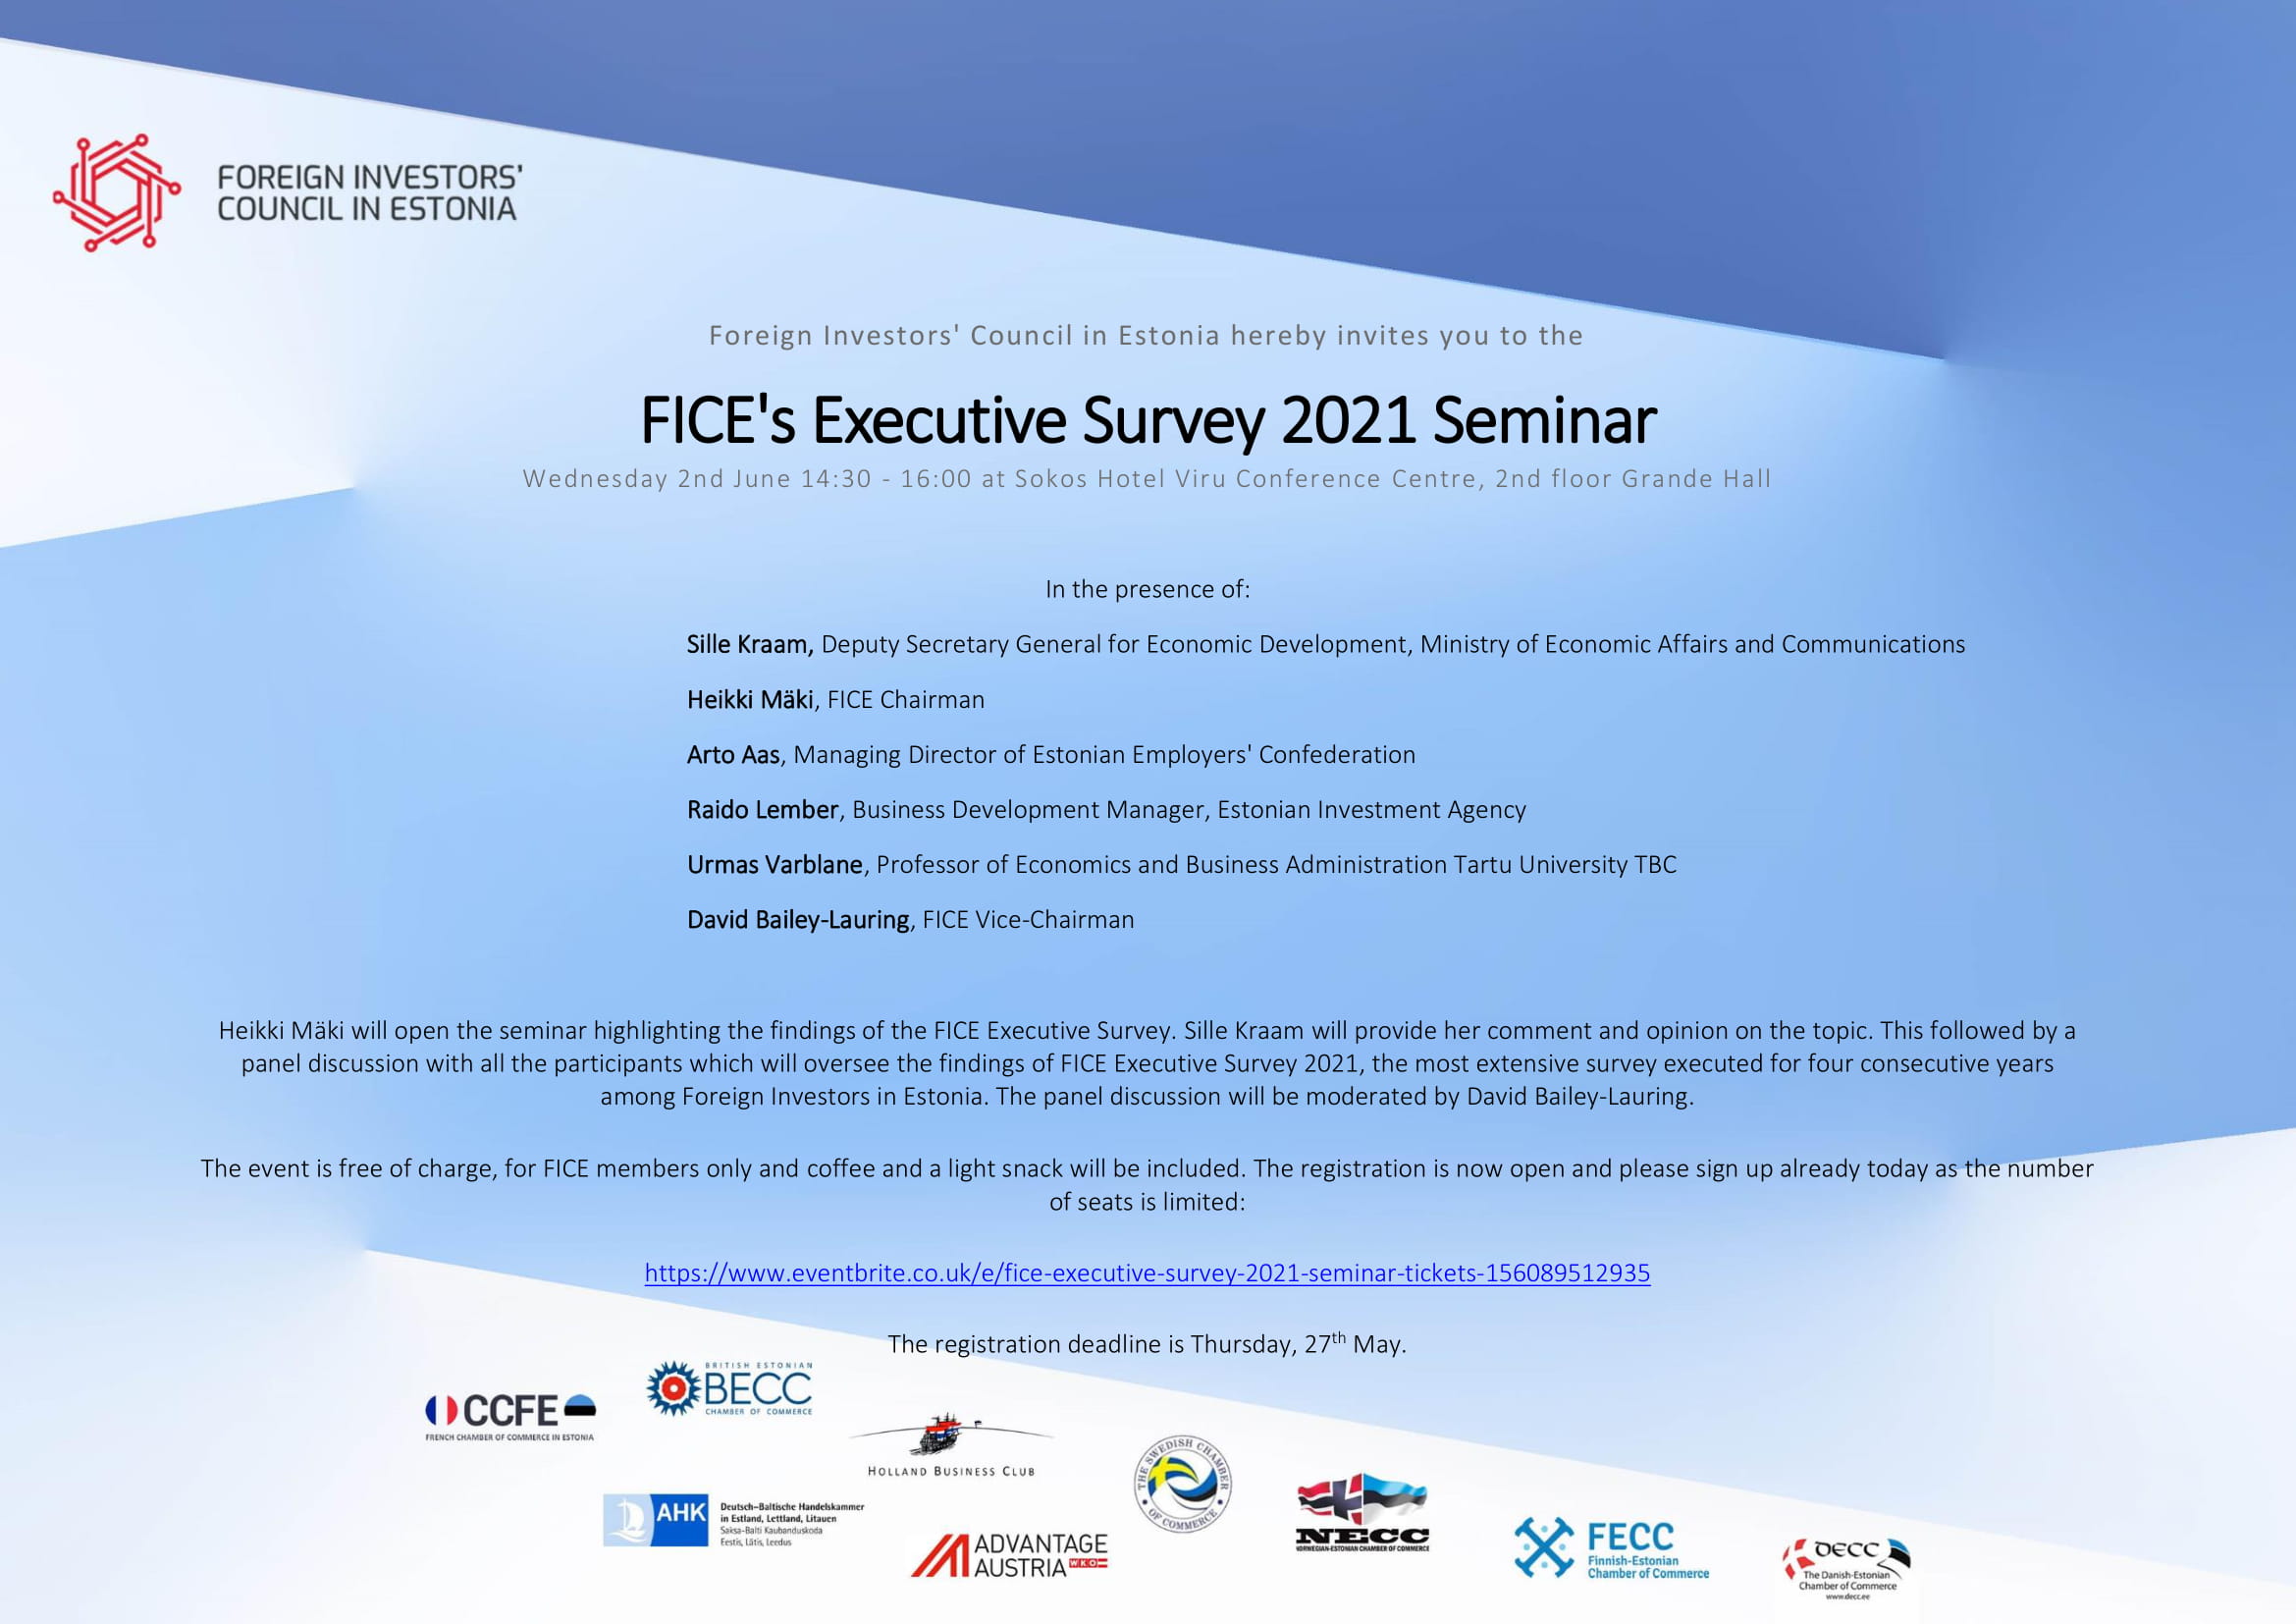 FICE's Executive Survey 2021 Seminar